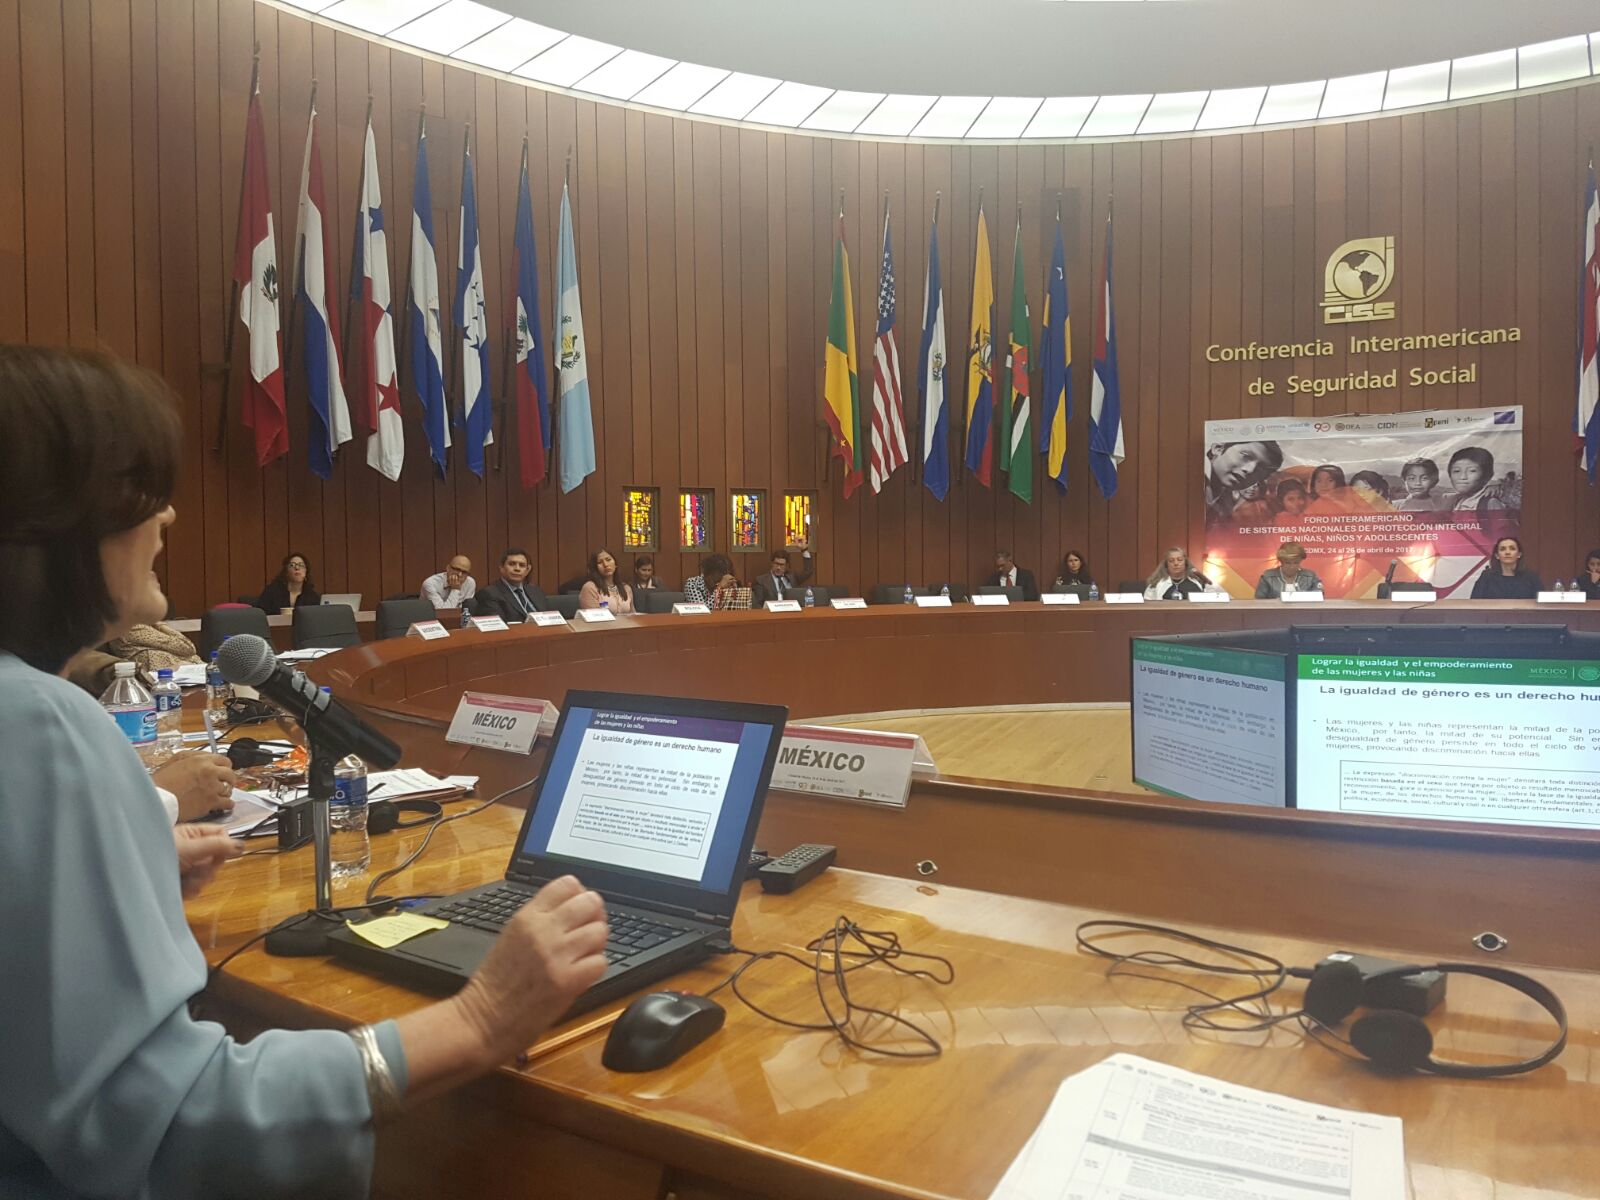 Pleno de las instituciones que participan en el Foro celebrado en Ciudad de México, el 24 y 25 abril 2017.